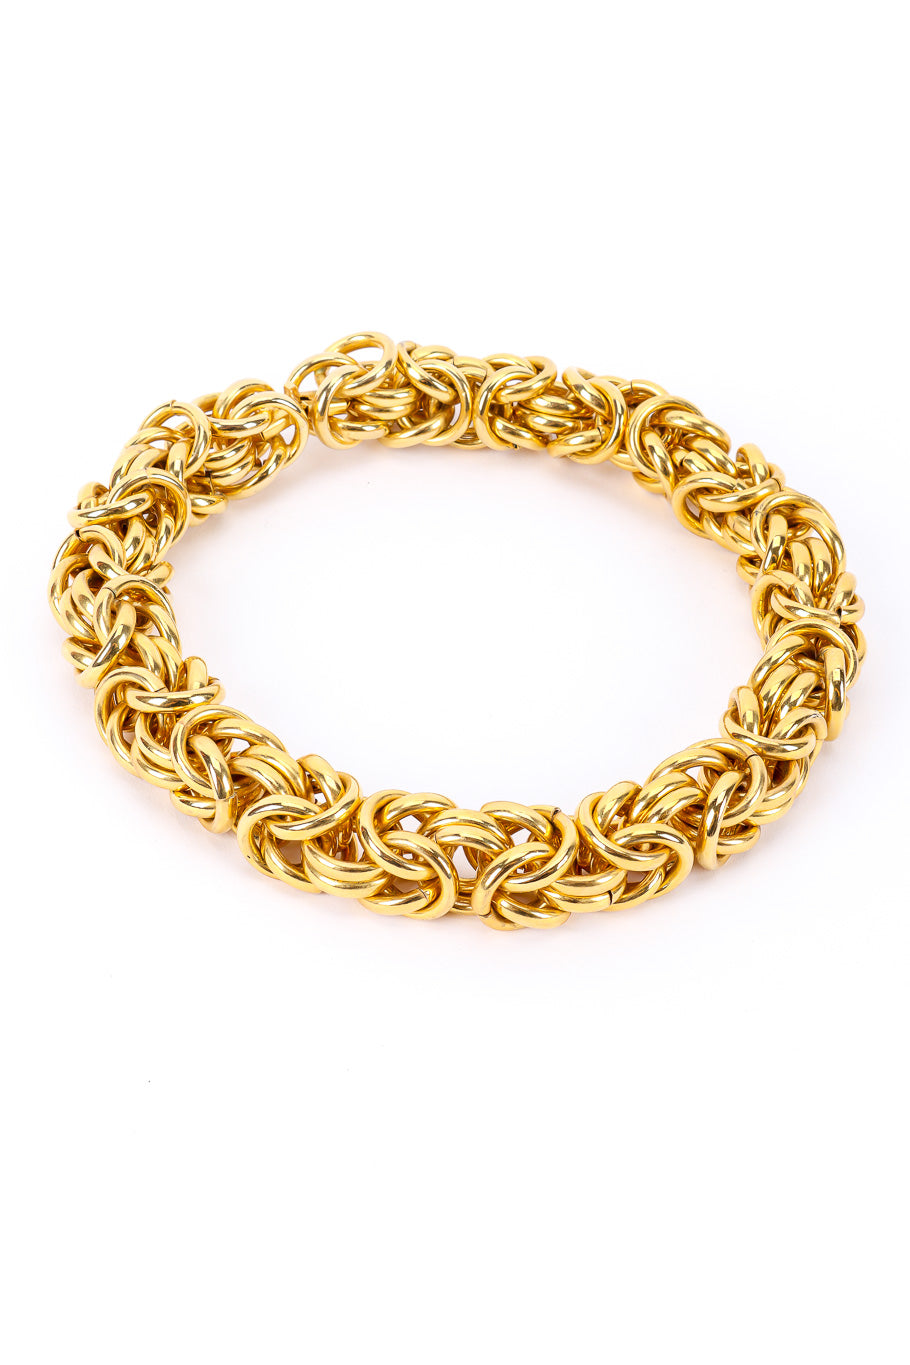 Vintage Chunky Byzantine Link Choker Necklace link detail @Recessla